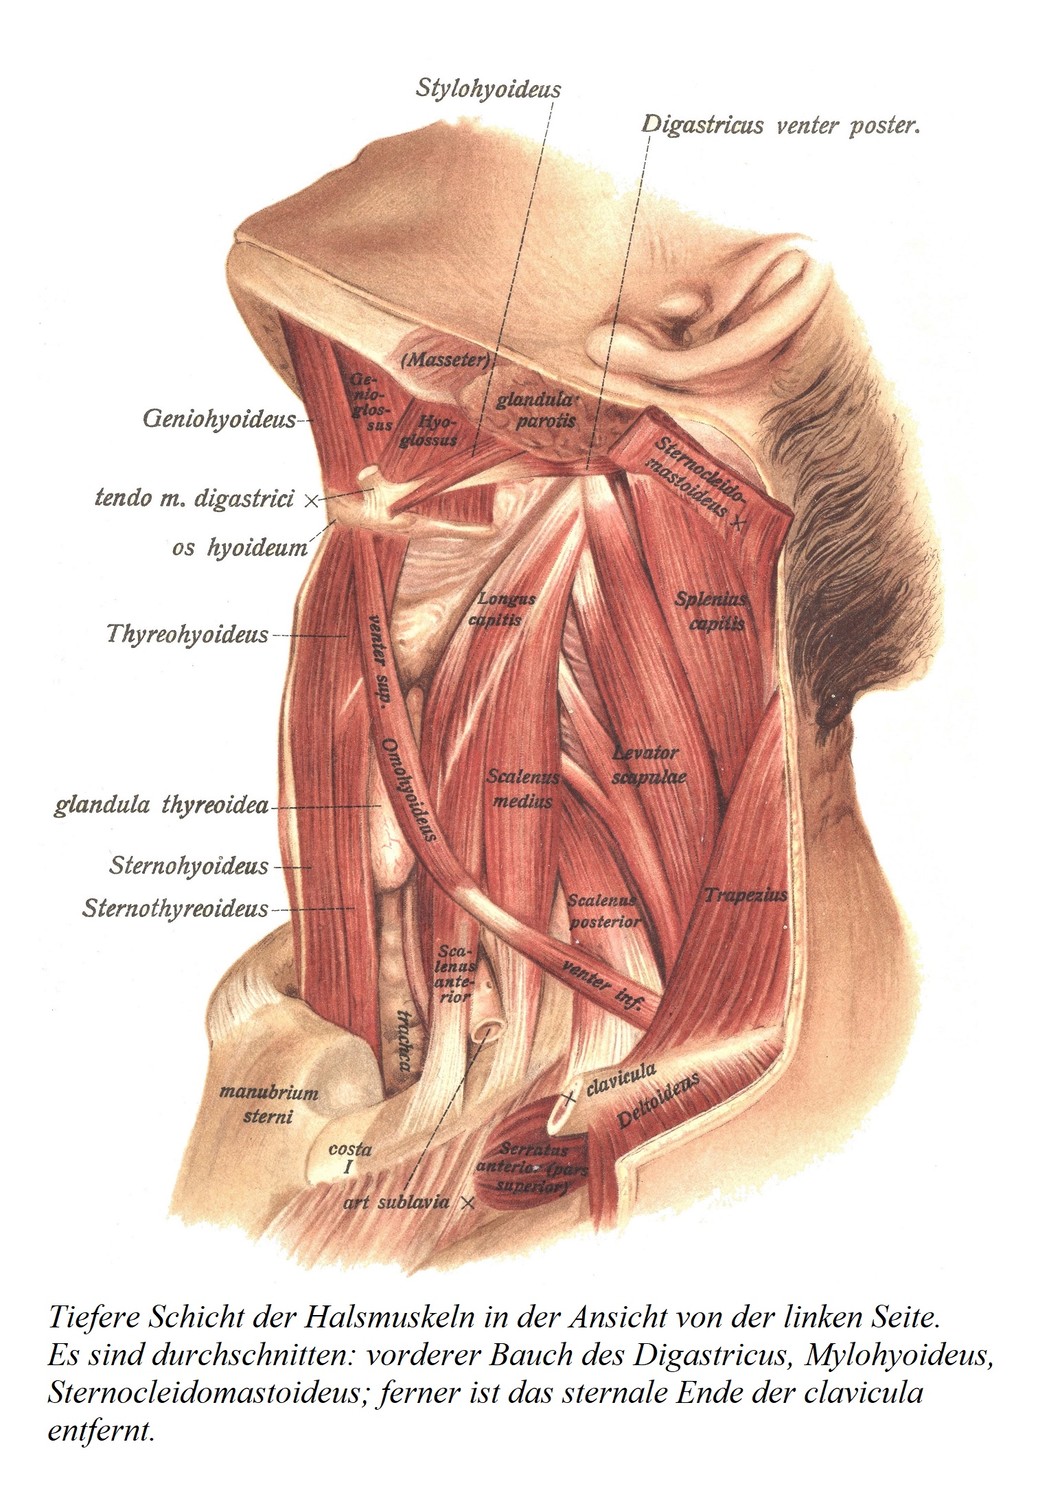 Глубокий слой мышц шеи при осмотре слева. Рассекают: переднее брюшко двубрюшной мышцы, подъязычно-подъязычную мышцу, грудино-ключично-сосцевидную мышцу; кроме того, удаляется грудинный конец ключицы.